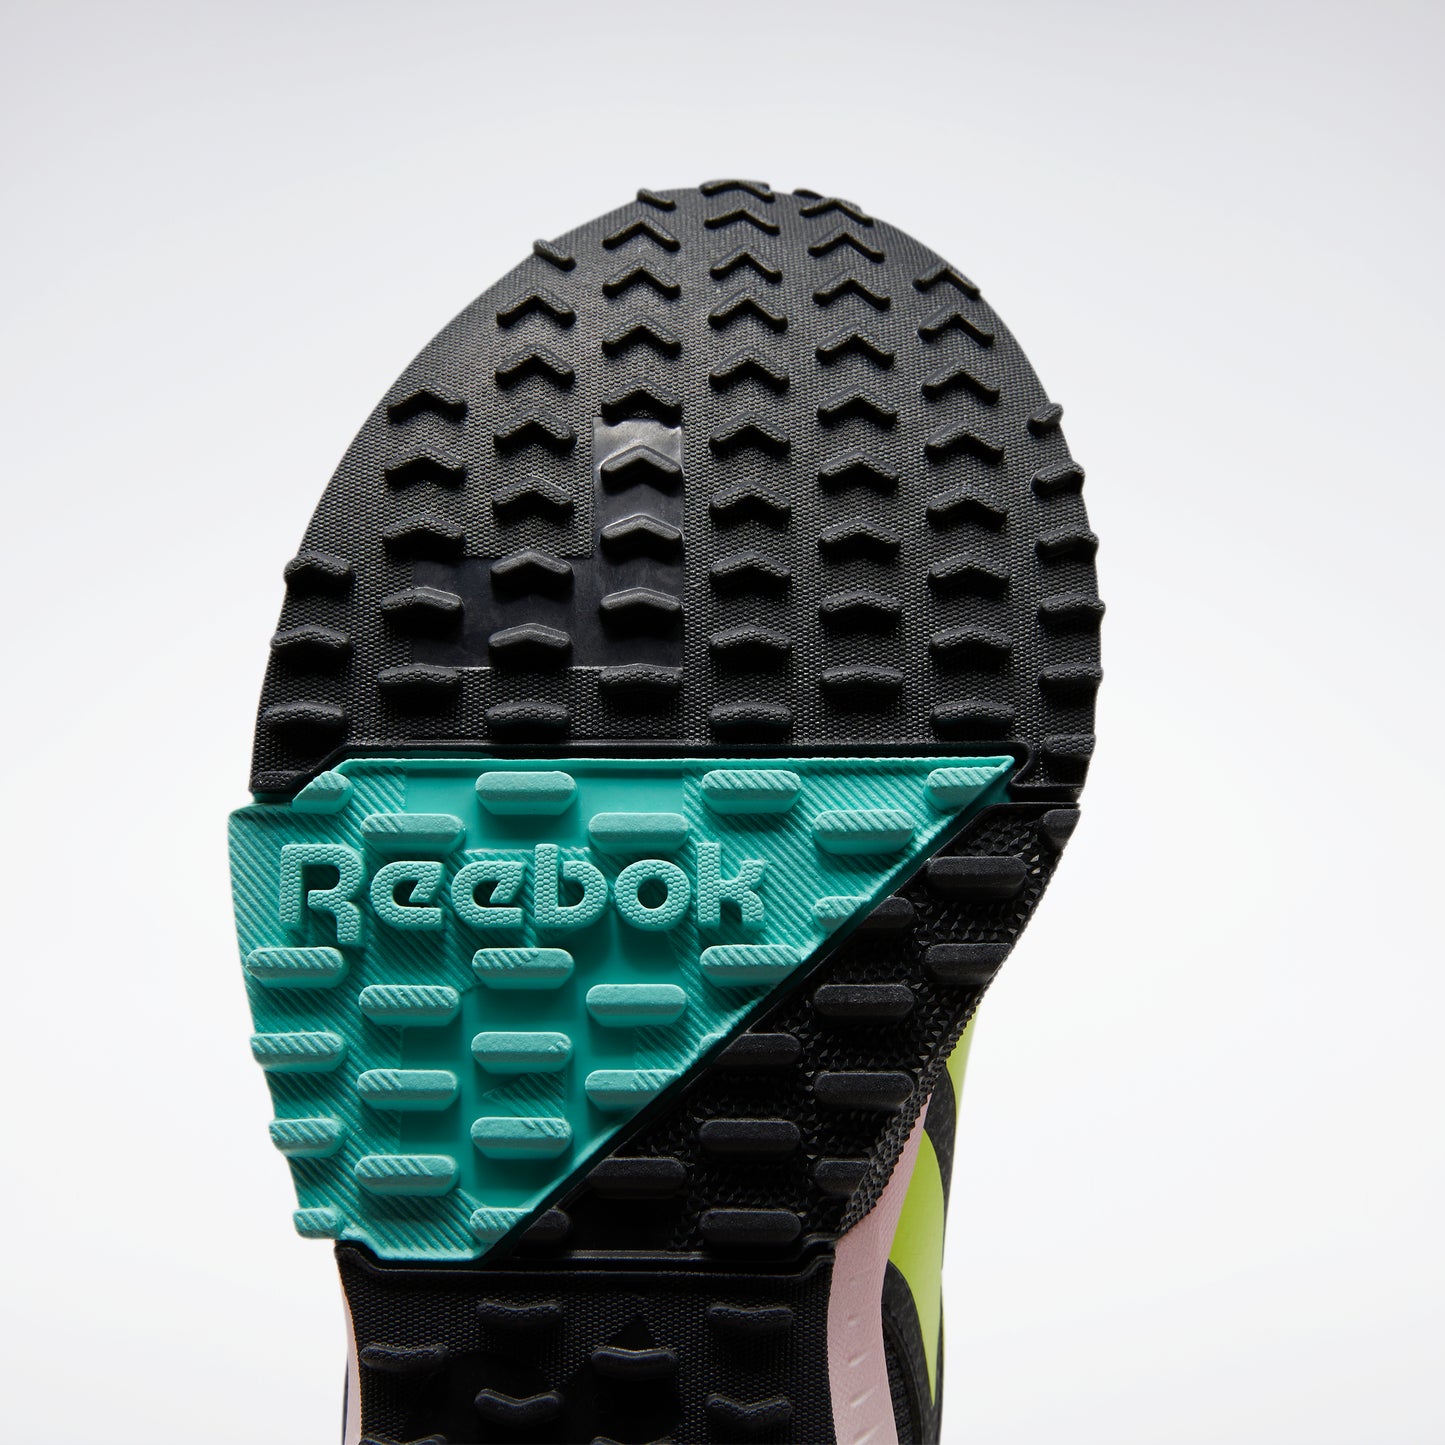 Reebok Footwear Women Lavante Trail 2 Shoes Cblack/Inflil/Aciyel